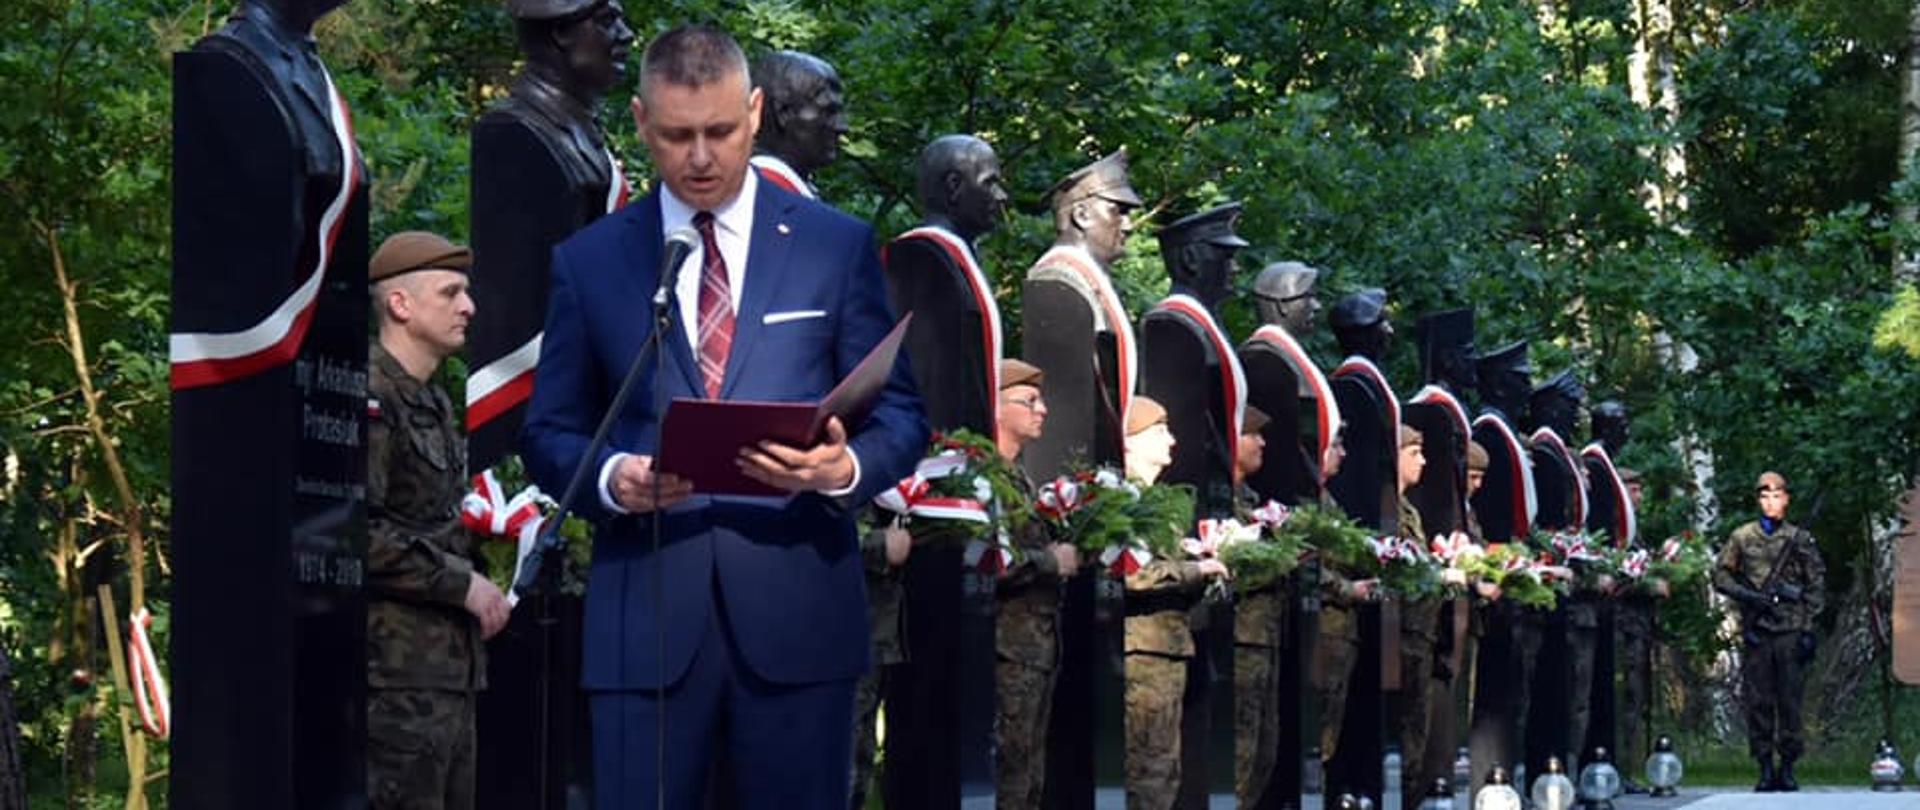 Na zdjęciu znajduje się mężczyzna czytający list, za nim stoją żołnierze